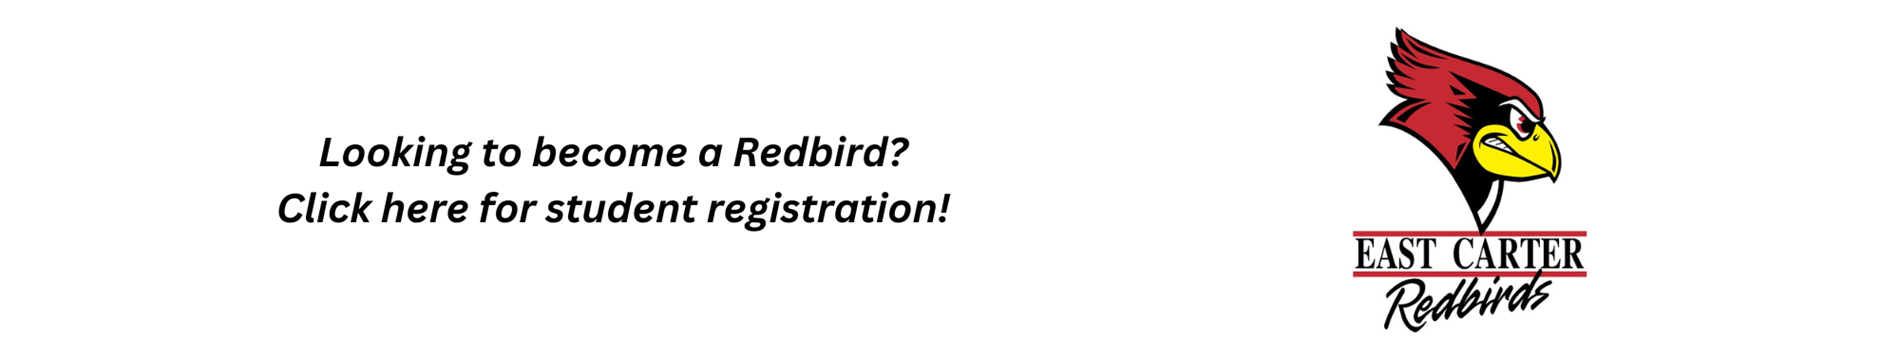 redbird student registration